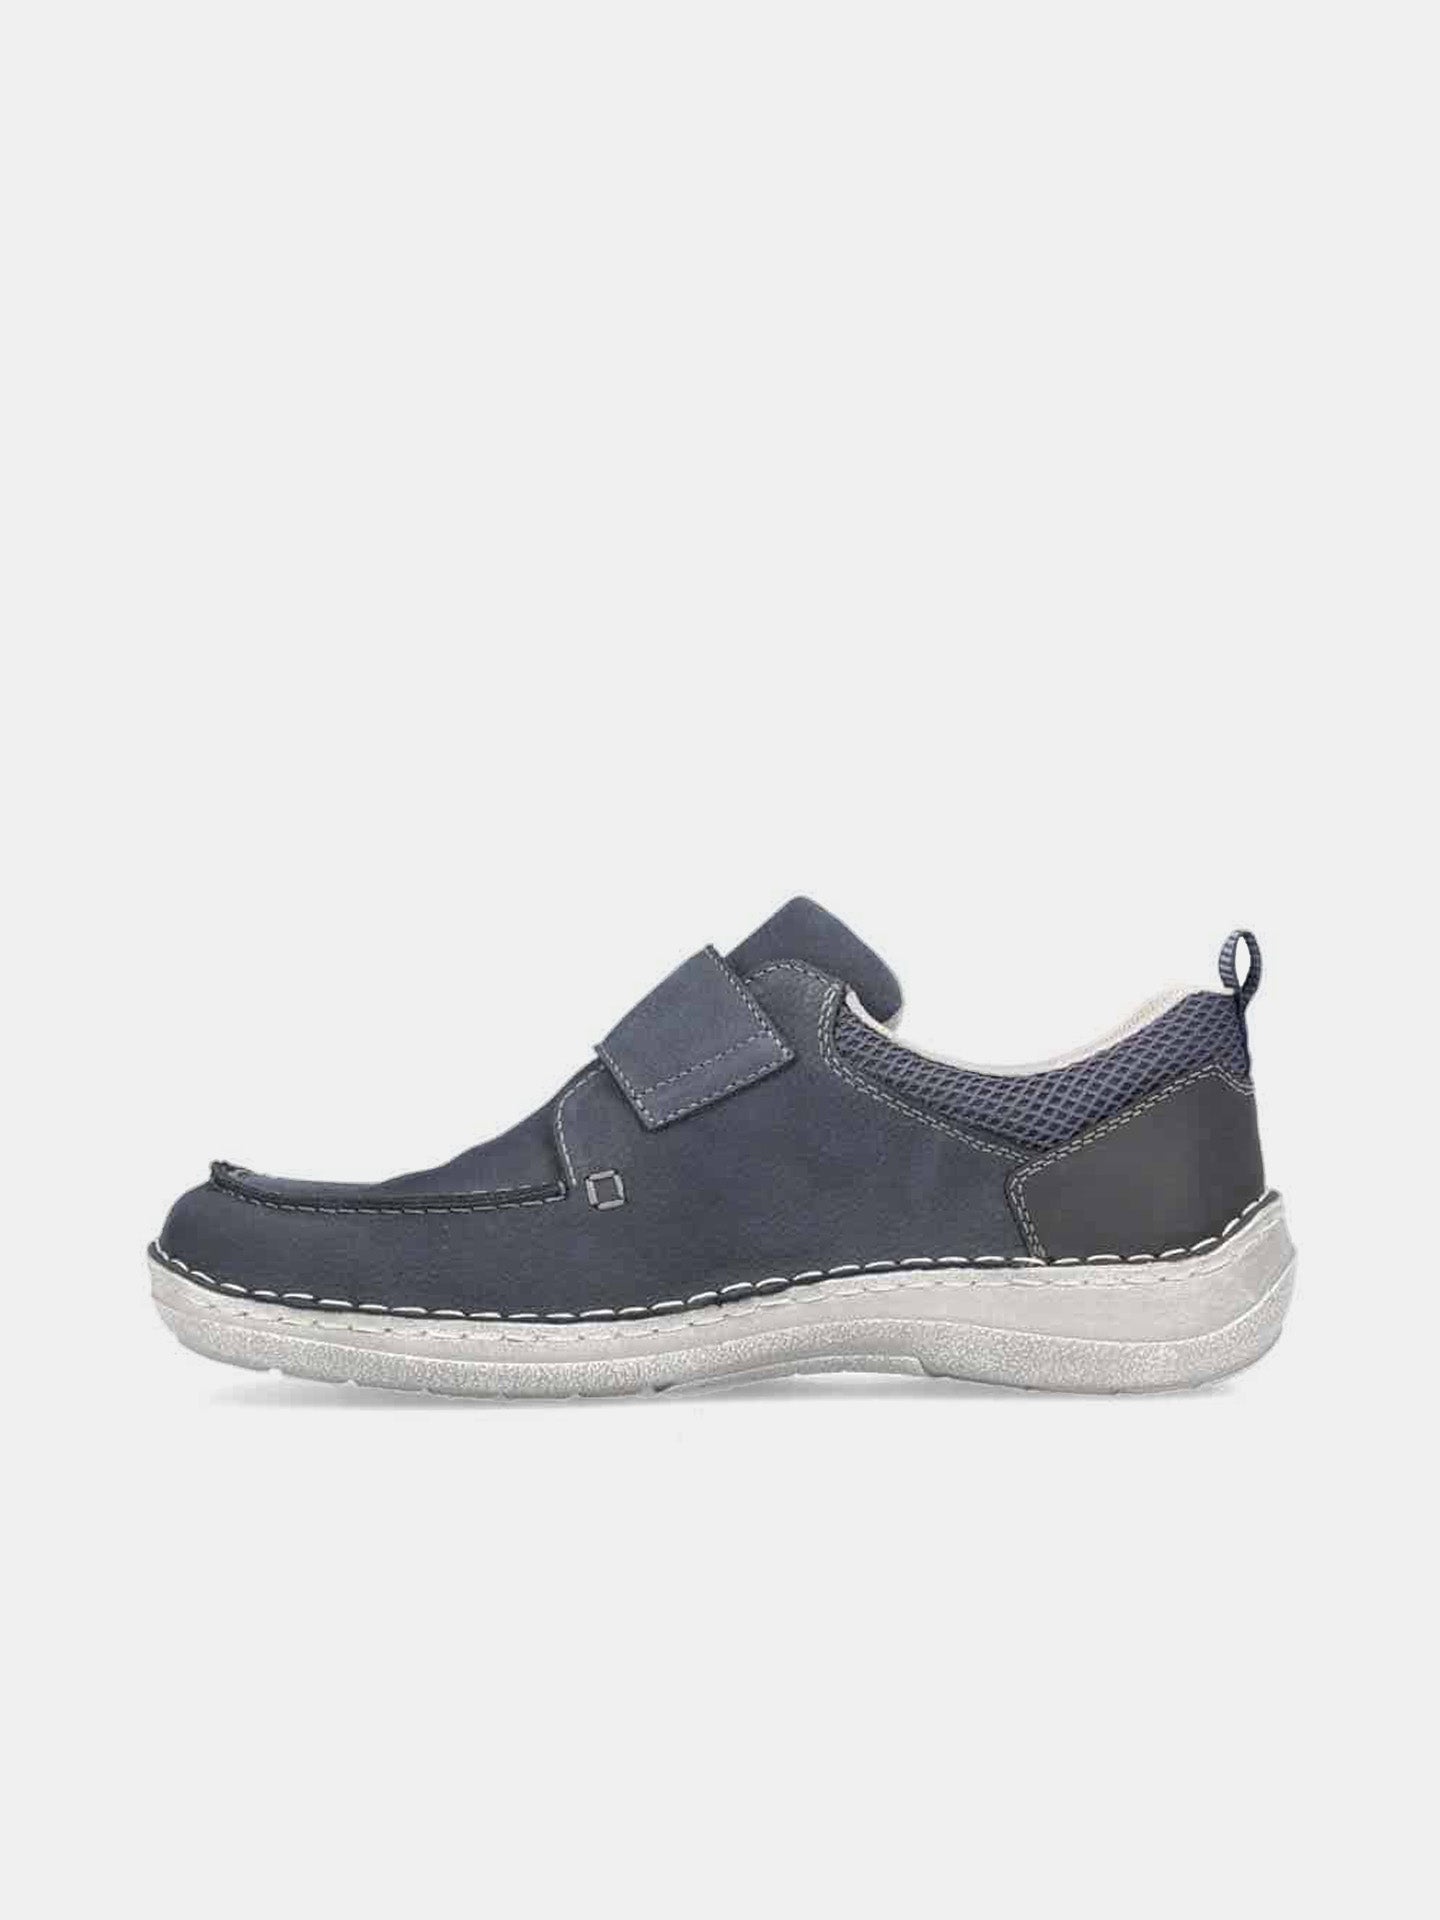 Rieker 03058 Men's Casual Shoes